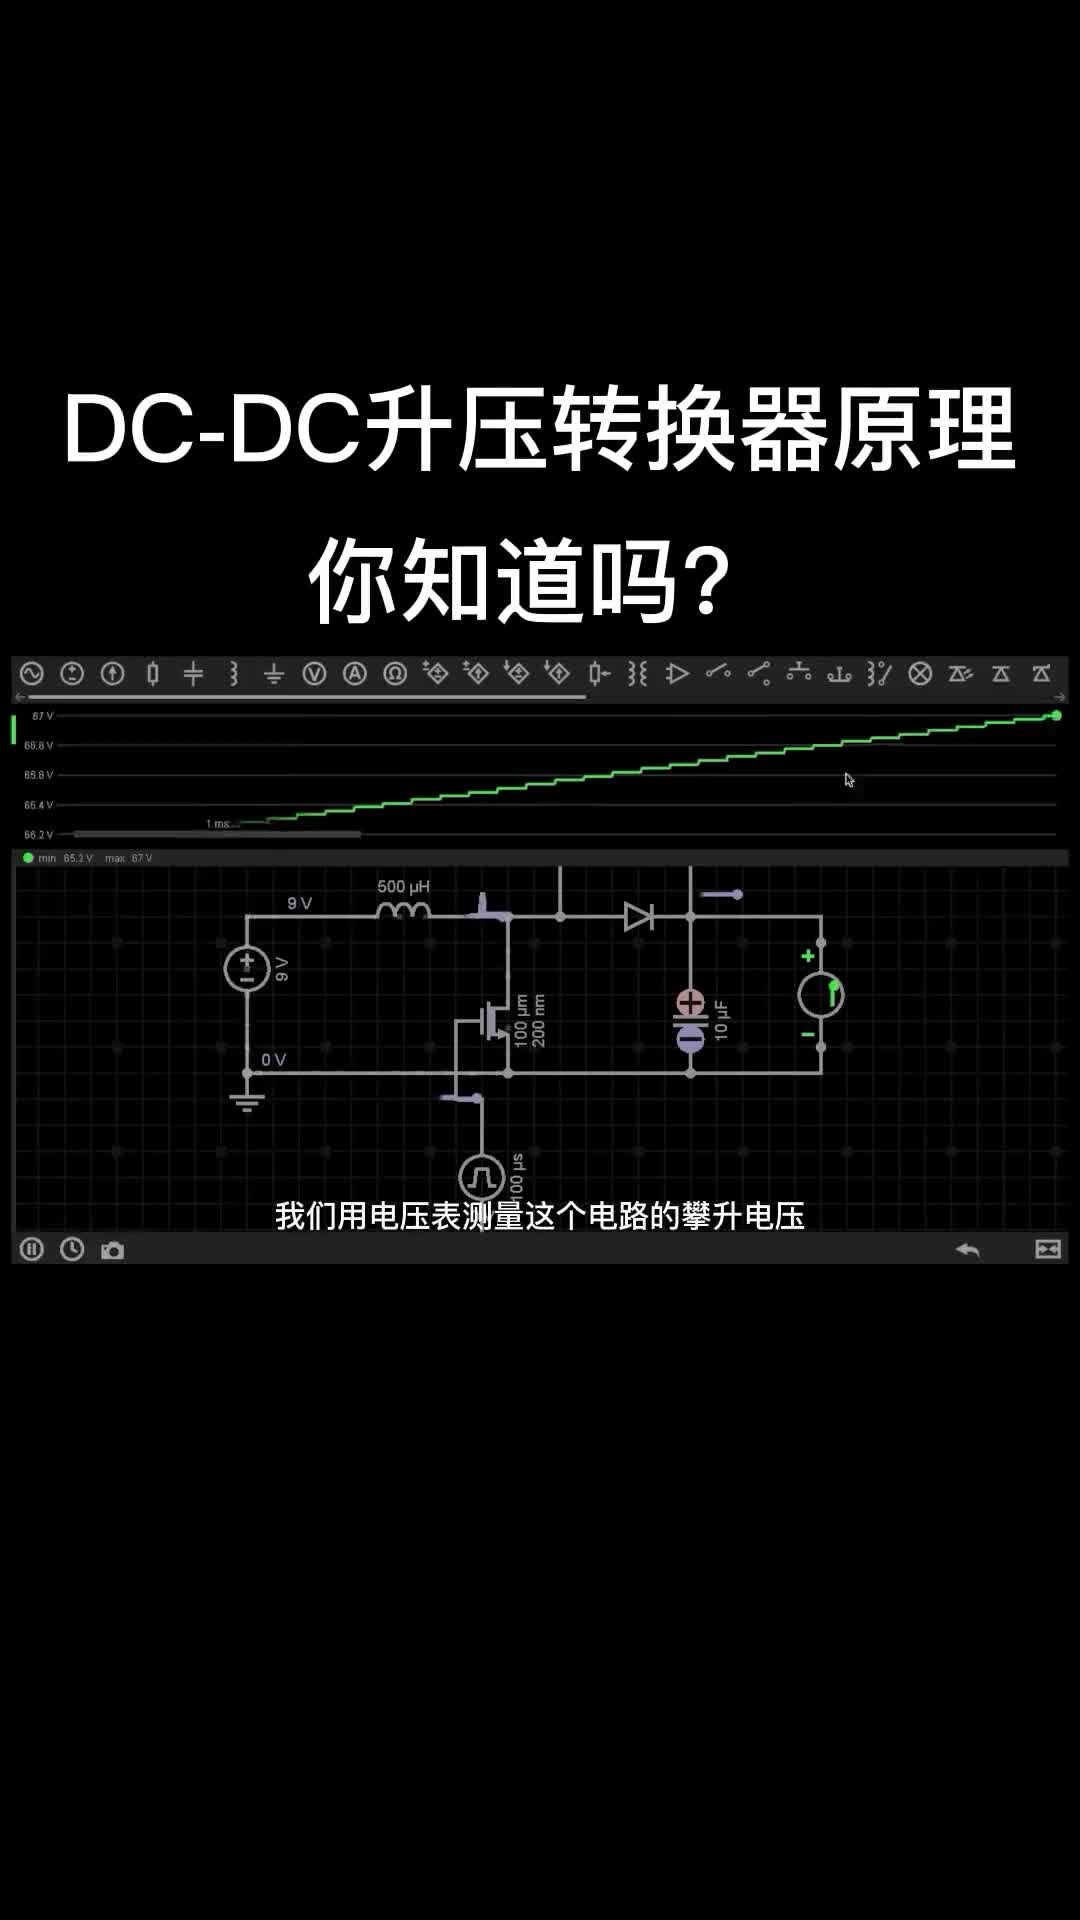 DC-DC升壓轉換器原理！ #硬聲創作季 